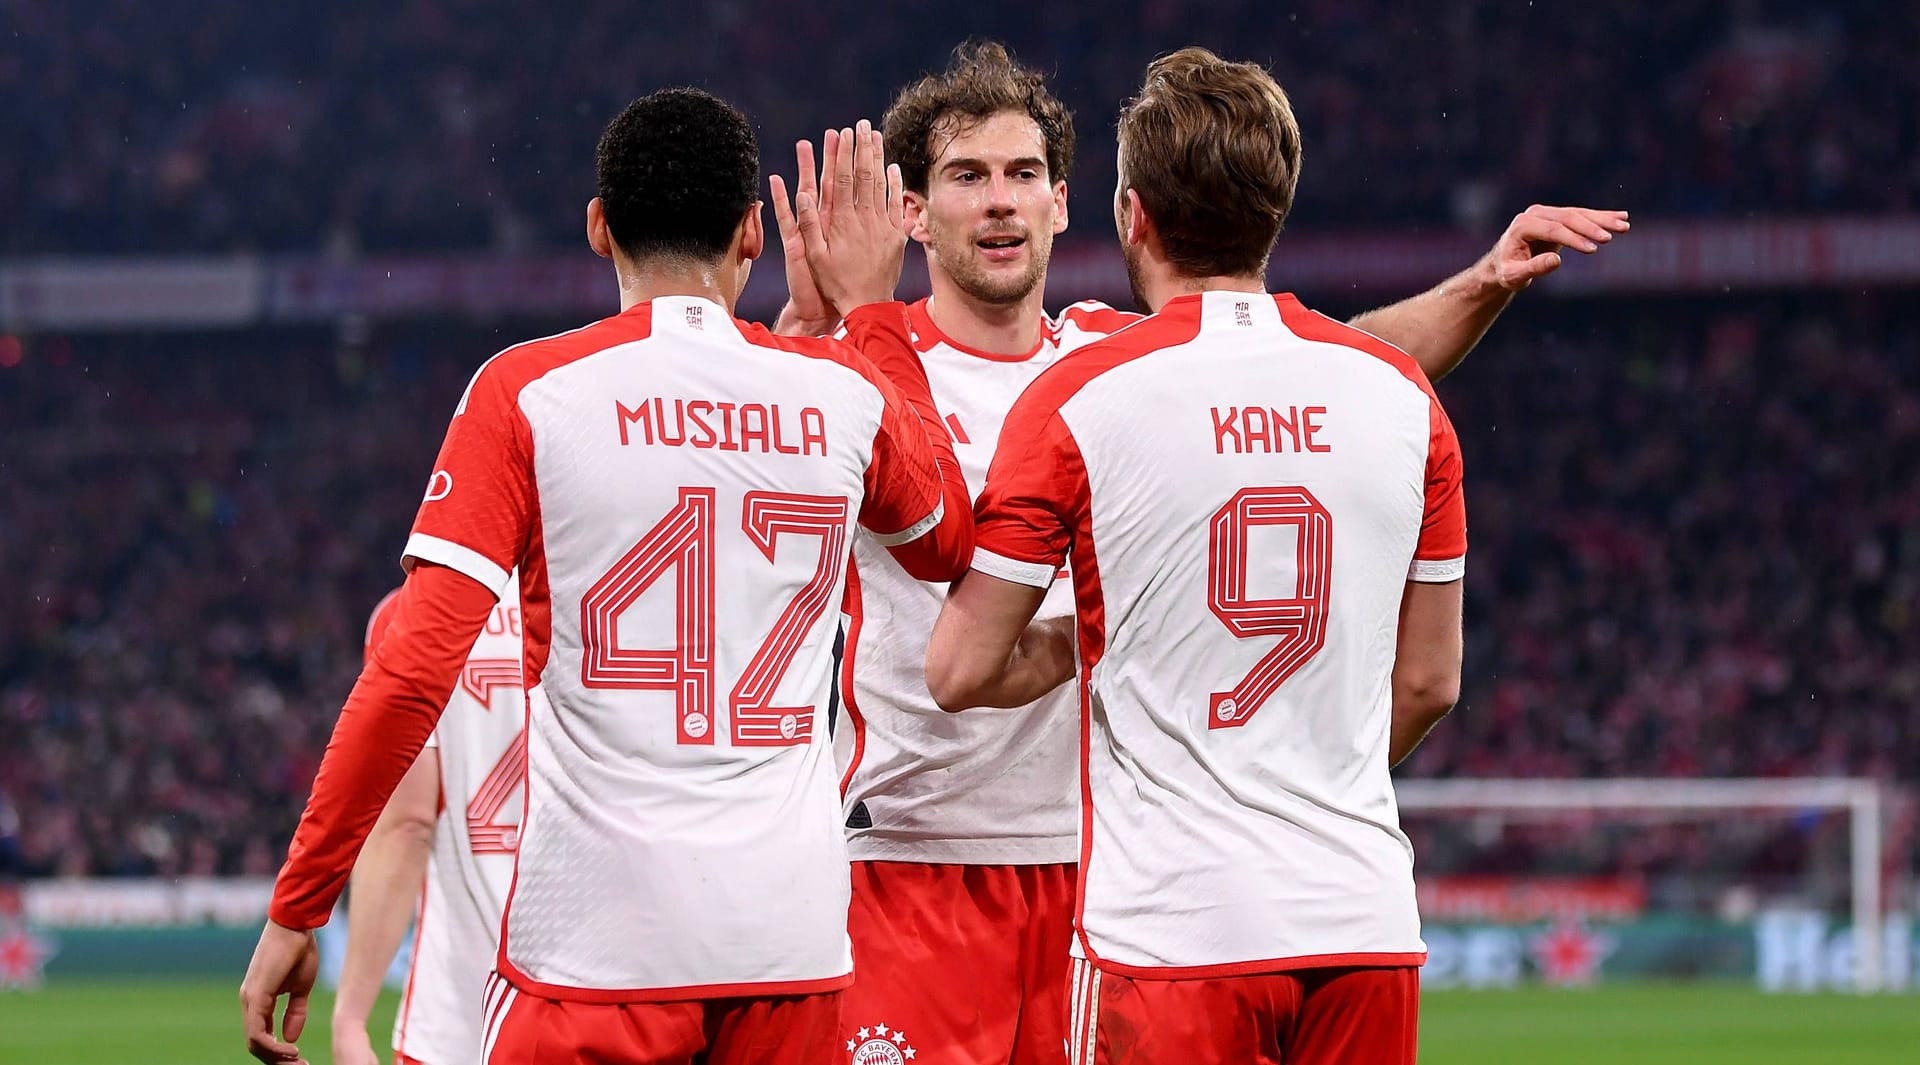 Der FC Bayern gewinnt das Achtelfinalrückspiel in der Champions League gegen Lazio Rom souverän mit 3:0 und zieht nach der 0:1-Hinspielniederlage damit in die nächste Runde ein. Der Rekordmeister zeigt dabei eine starke Teamleistung, ein Star ragt dabei aber besonders heraus. Die Einzelkritik.